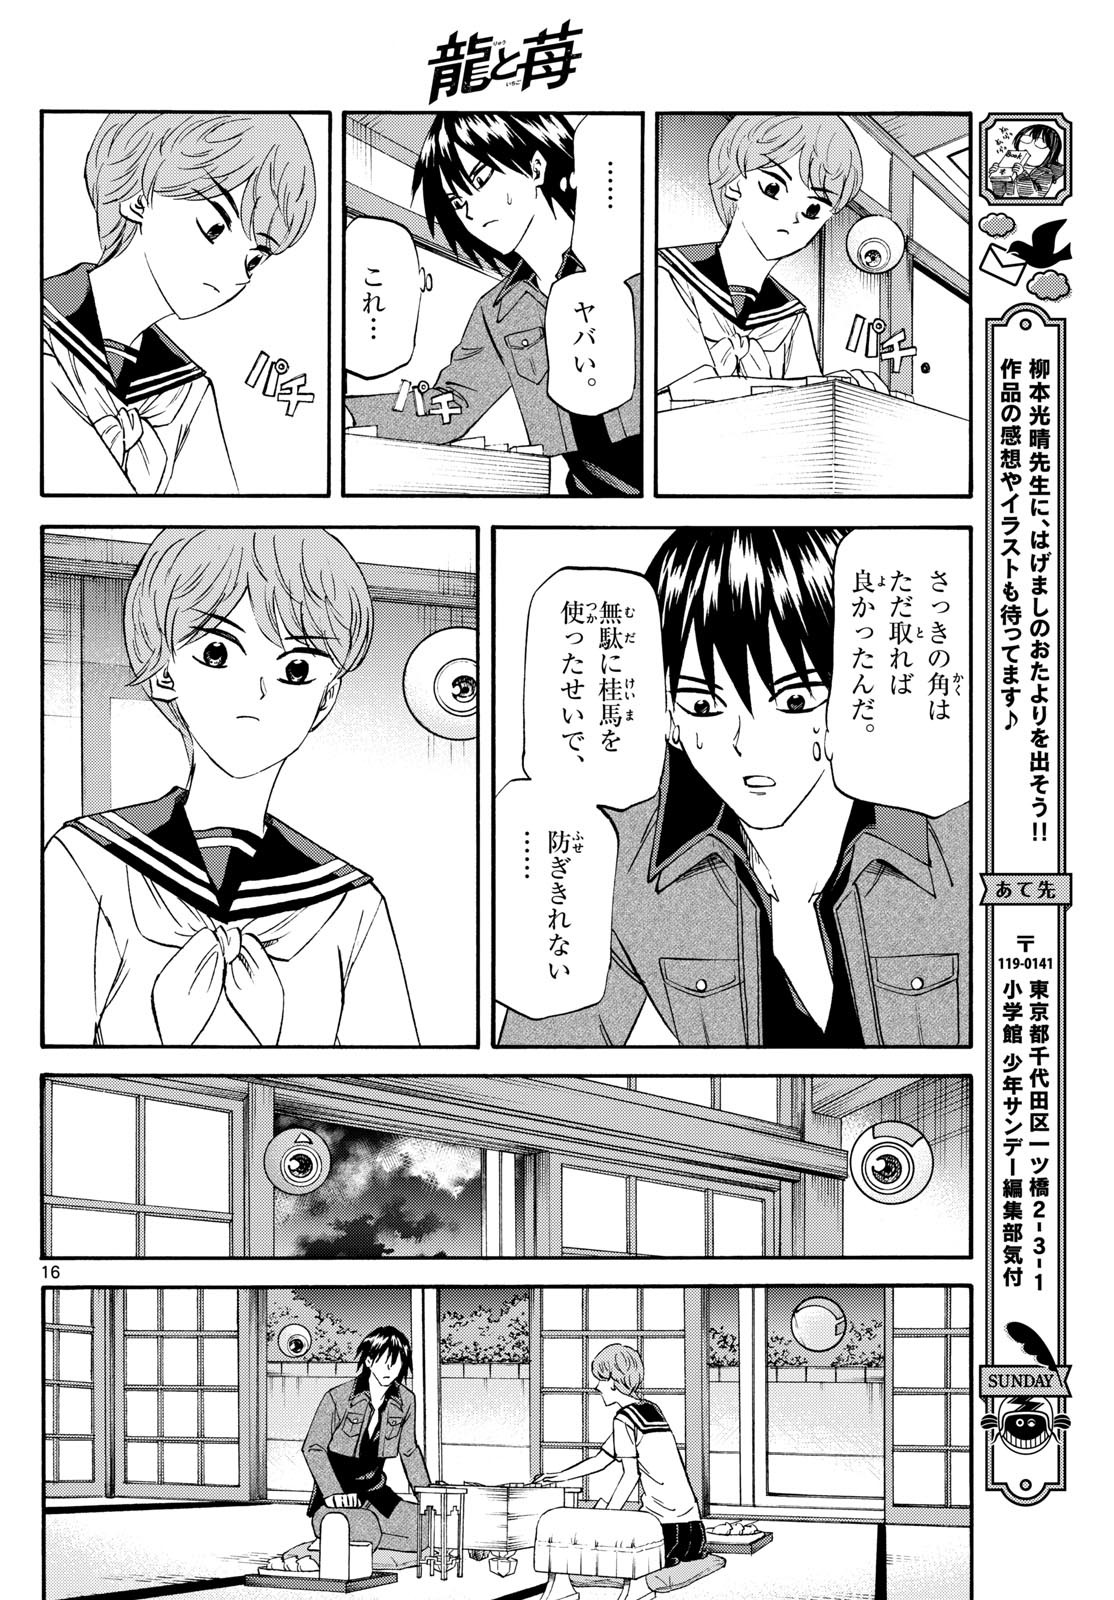 Ryu-to-Ichigo - Chapter 194 - Page 16